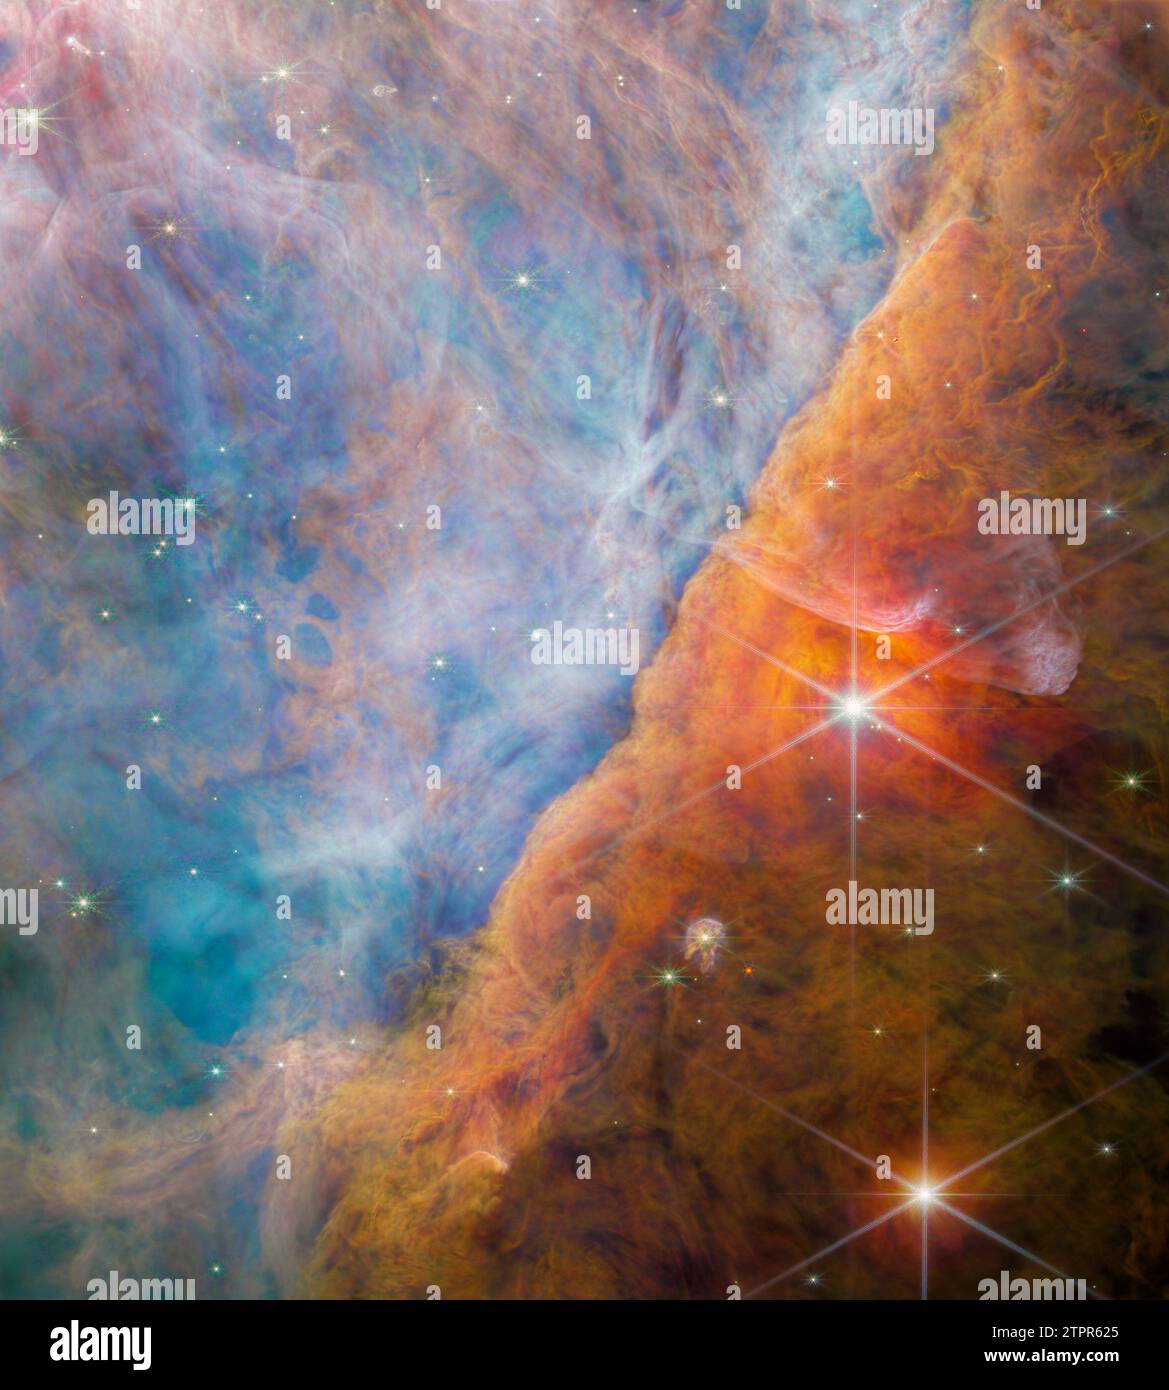 Questa immagine, pubblicata il 26 giugno 2023, e scattata dal NIRCam (Near-Infrared camera) del James Webb Space Telescope della NASA, mostra una parte della nebulosa di Orion conosciuta come Orion Bar. È una regione in cui la luce ultravioletta energica proveniente dall'ammasso trapezoidale, situata all'esterno dell'angolo in alto a sinistra, interagisce con dense nubi molecolari. L'energia della radiazione stellare sta lentamente erodendo l'Orion Bar, che influenza profondamente le molecole e la chimica nei dischi protoplanetari che si sono formati intorno alle stelle appena nate qui. All'interno di questa immagine si trova un giovane sistema stellare noto come d203-506, che ha un proto Foto Stock